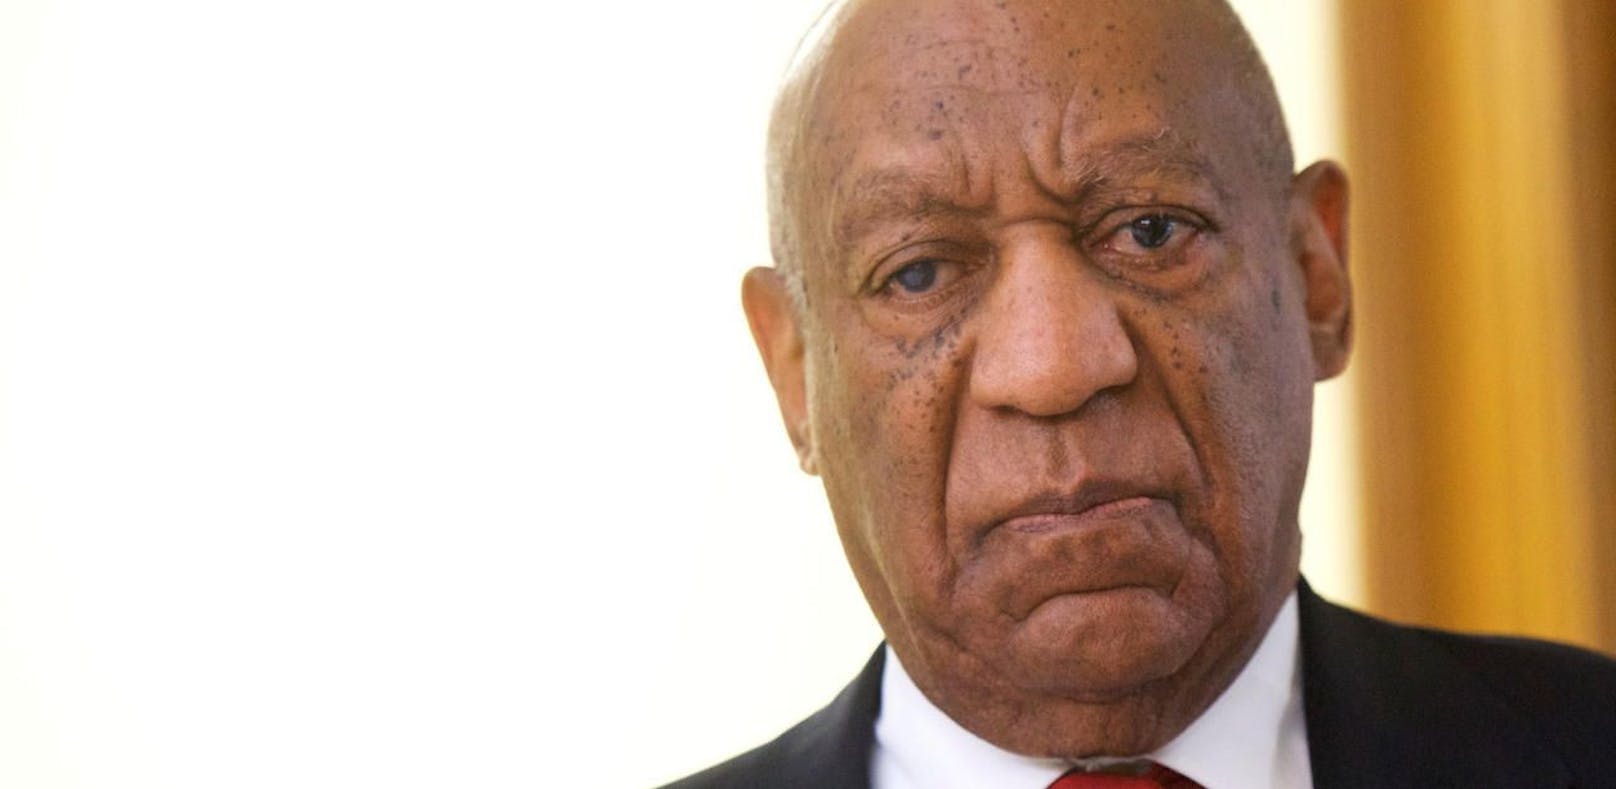 Antrag auf Strafminderung für Bill Cosby abgelehnt